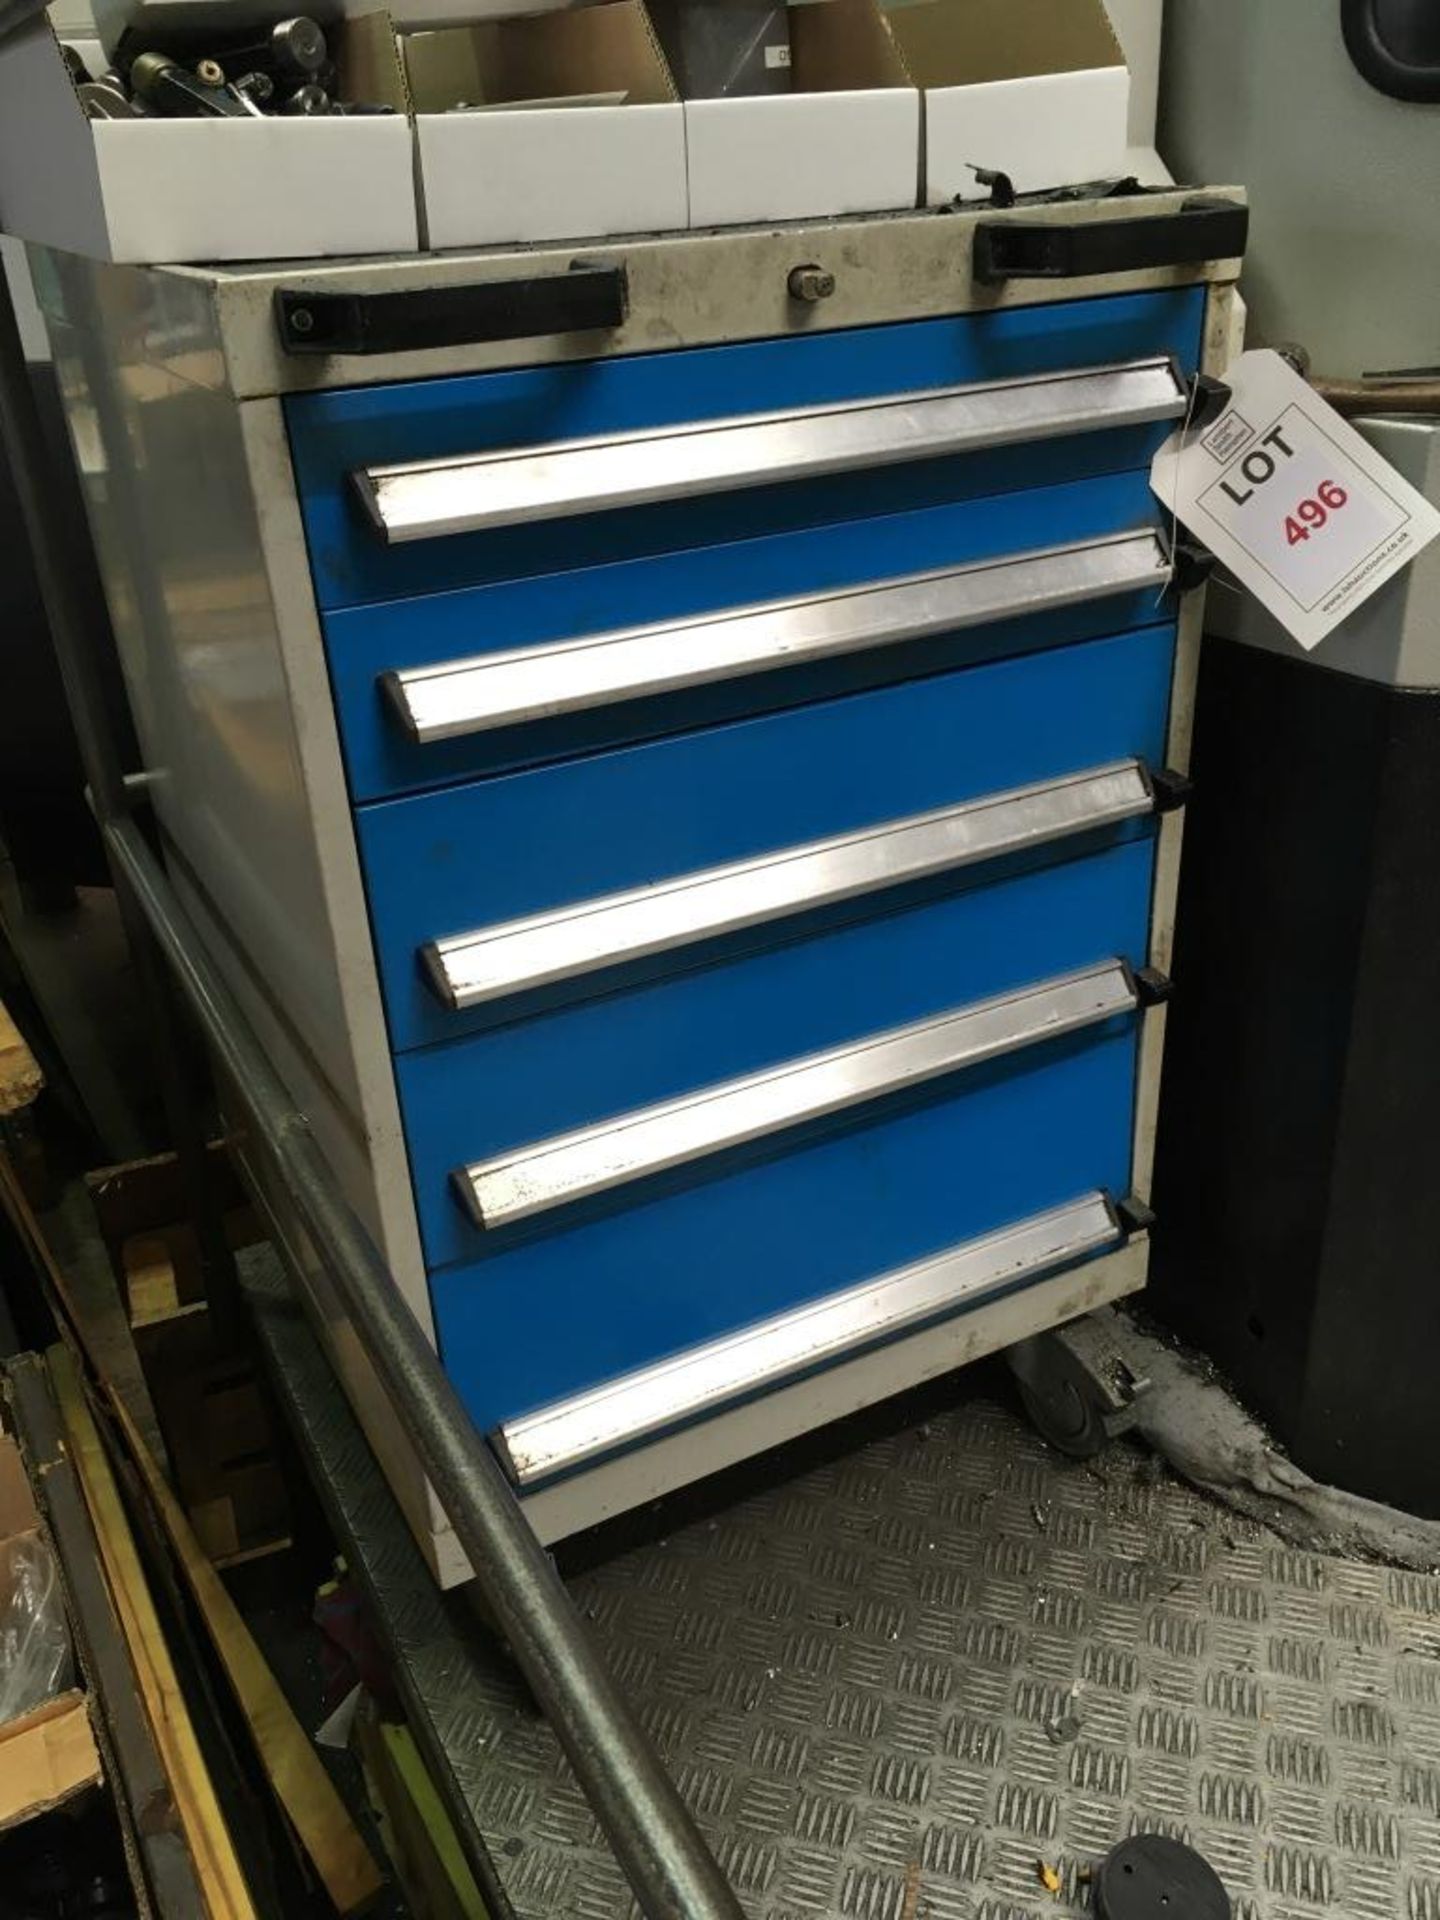 Mobile steel five roller drawer tooling cabinet, blue/grey - Image 2 of 2